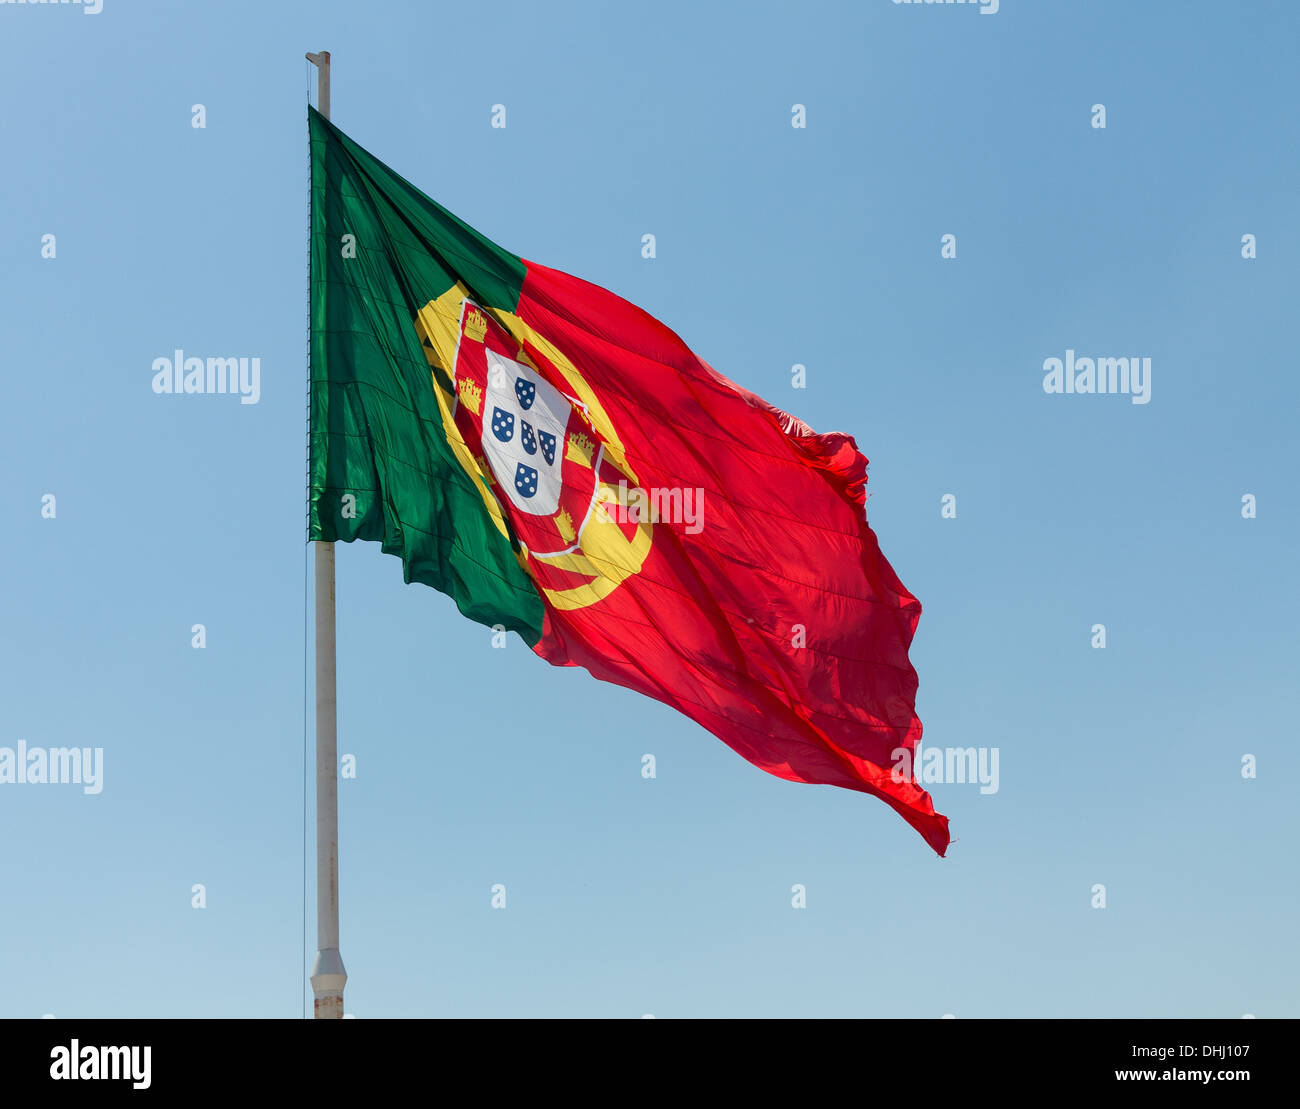 Le pavillon du Portugal ou Bandeira de Portugal est le drapeau national de la République portugaise. Banque D'Images